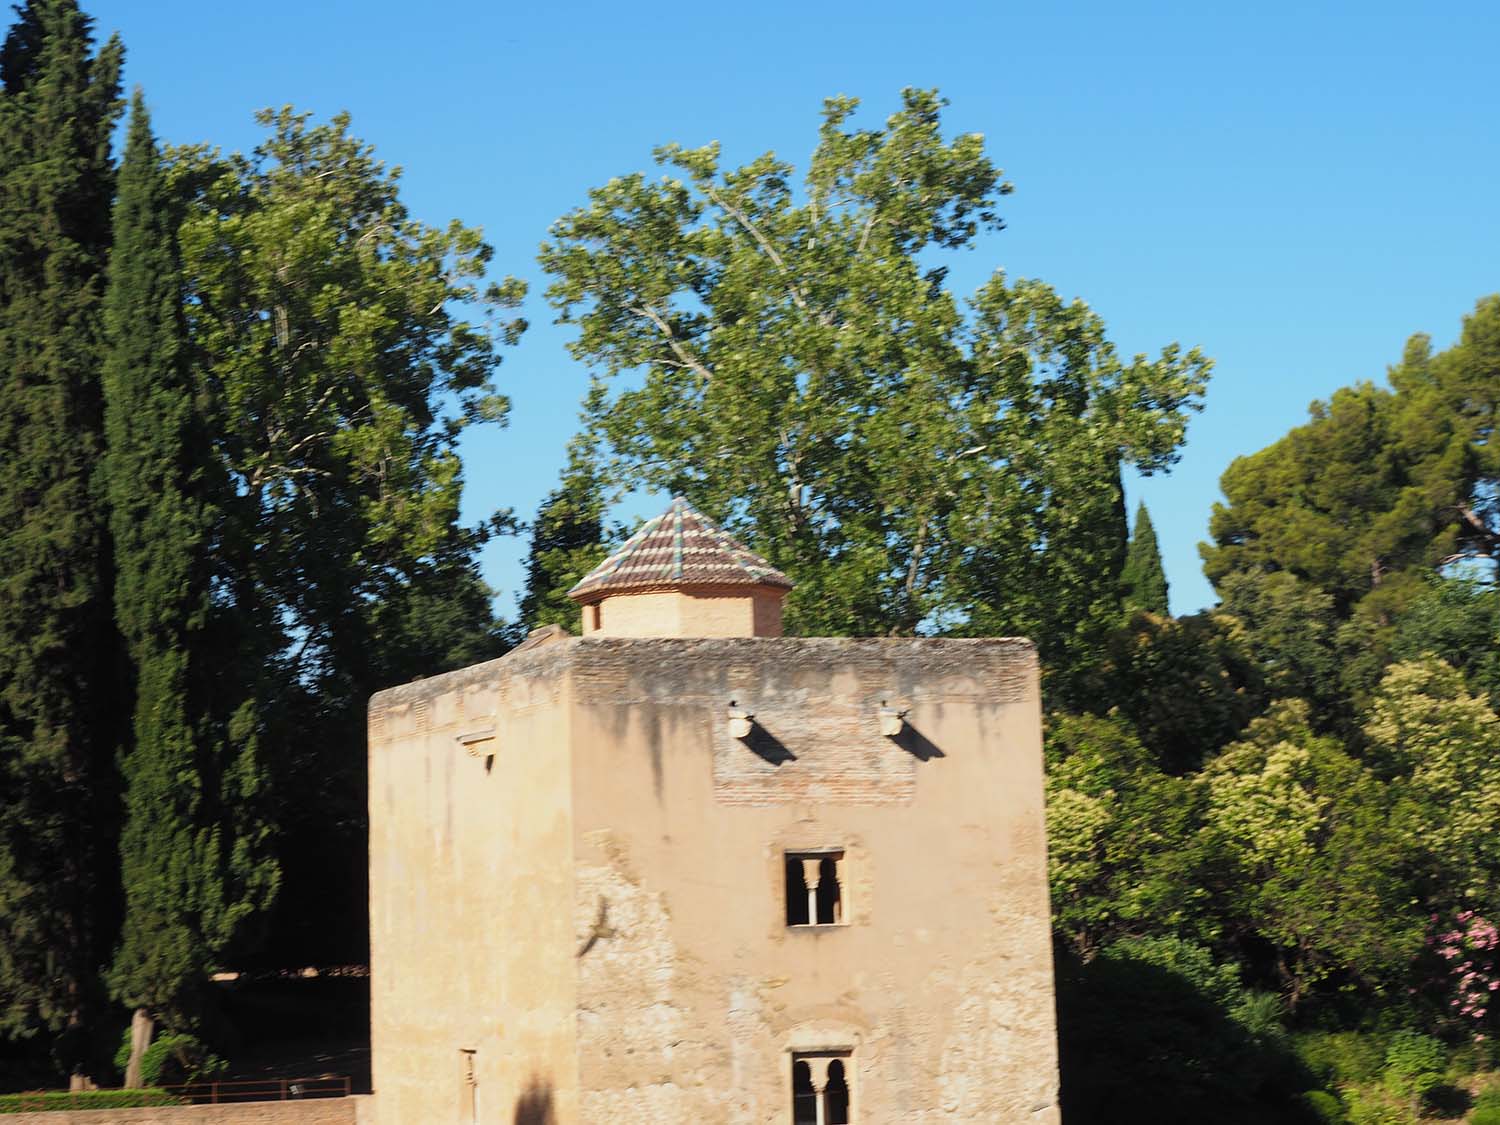 Southwest view of the Torre de las Infantas